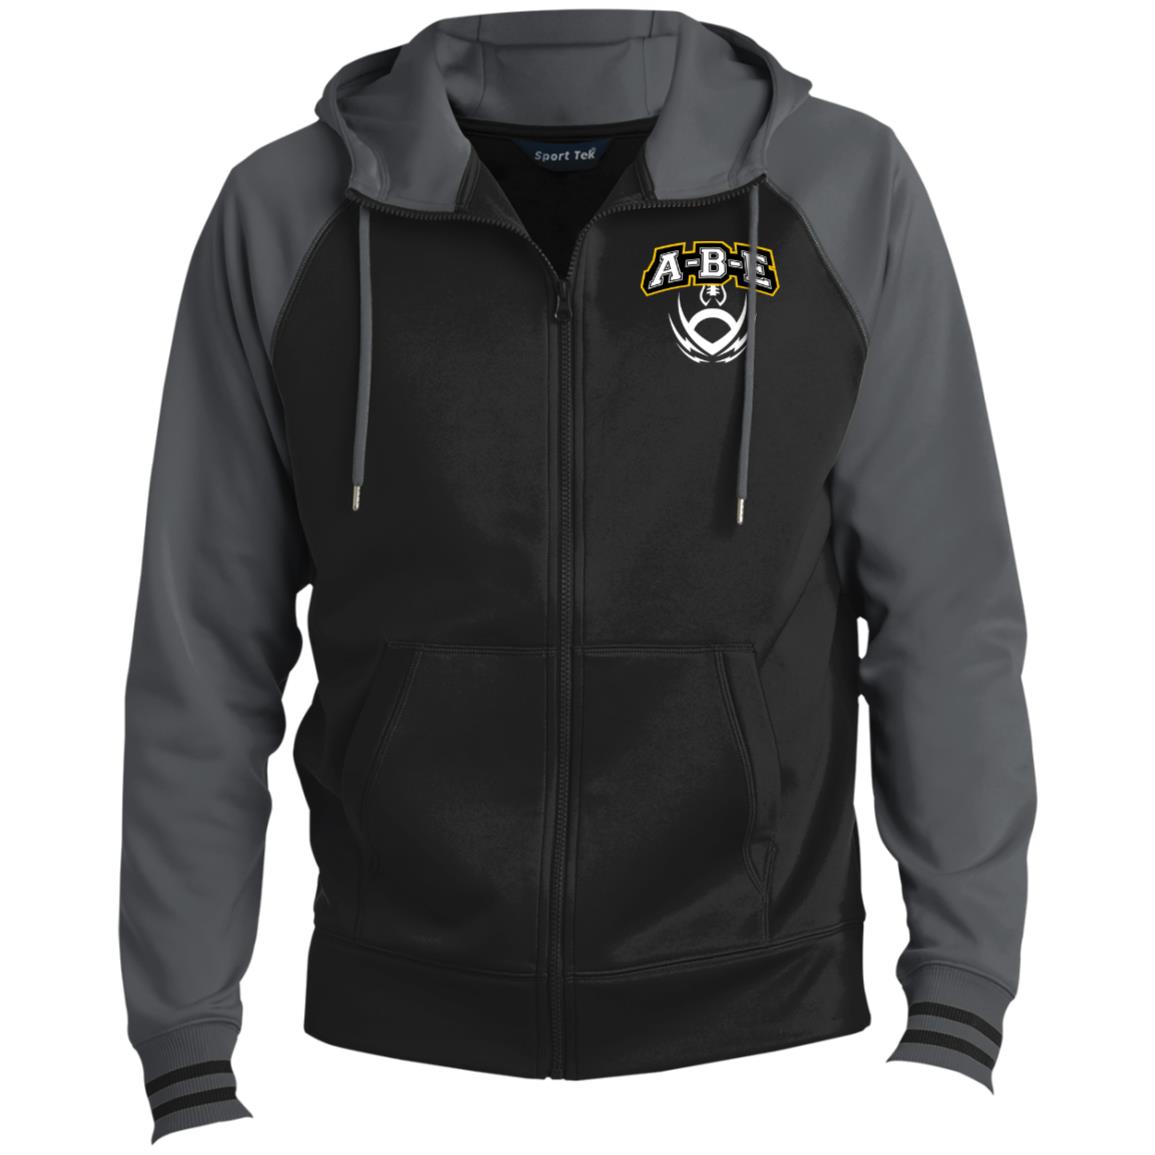 A-B-E Football - Men's Sport-Wick® Full-Zip Hooded Jacket